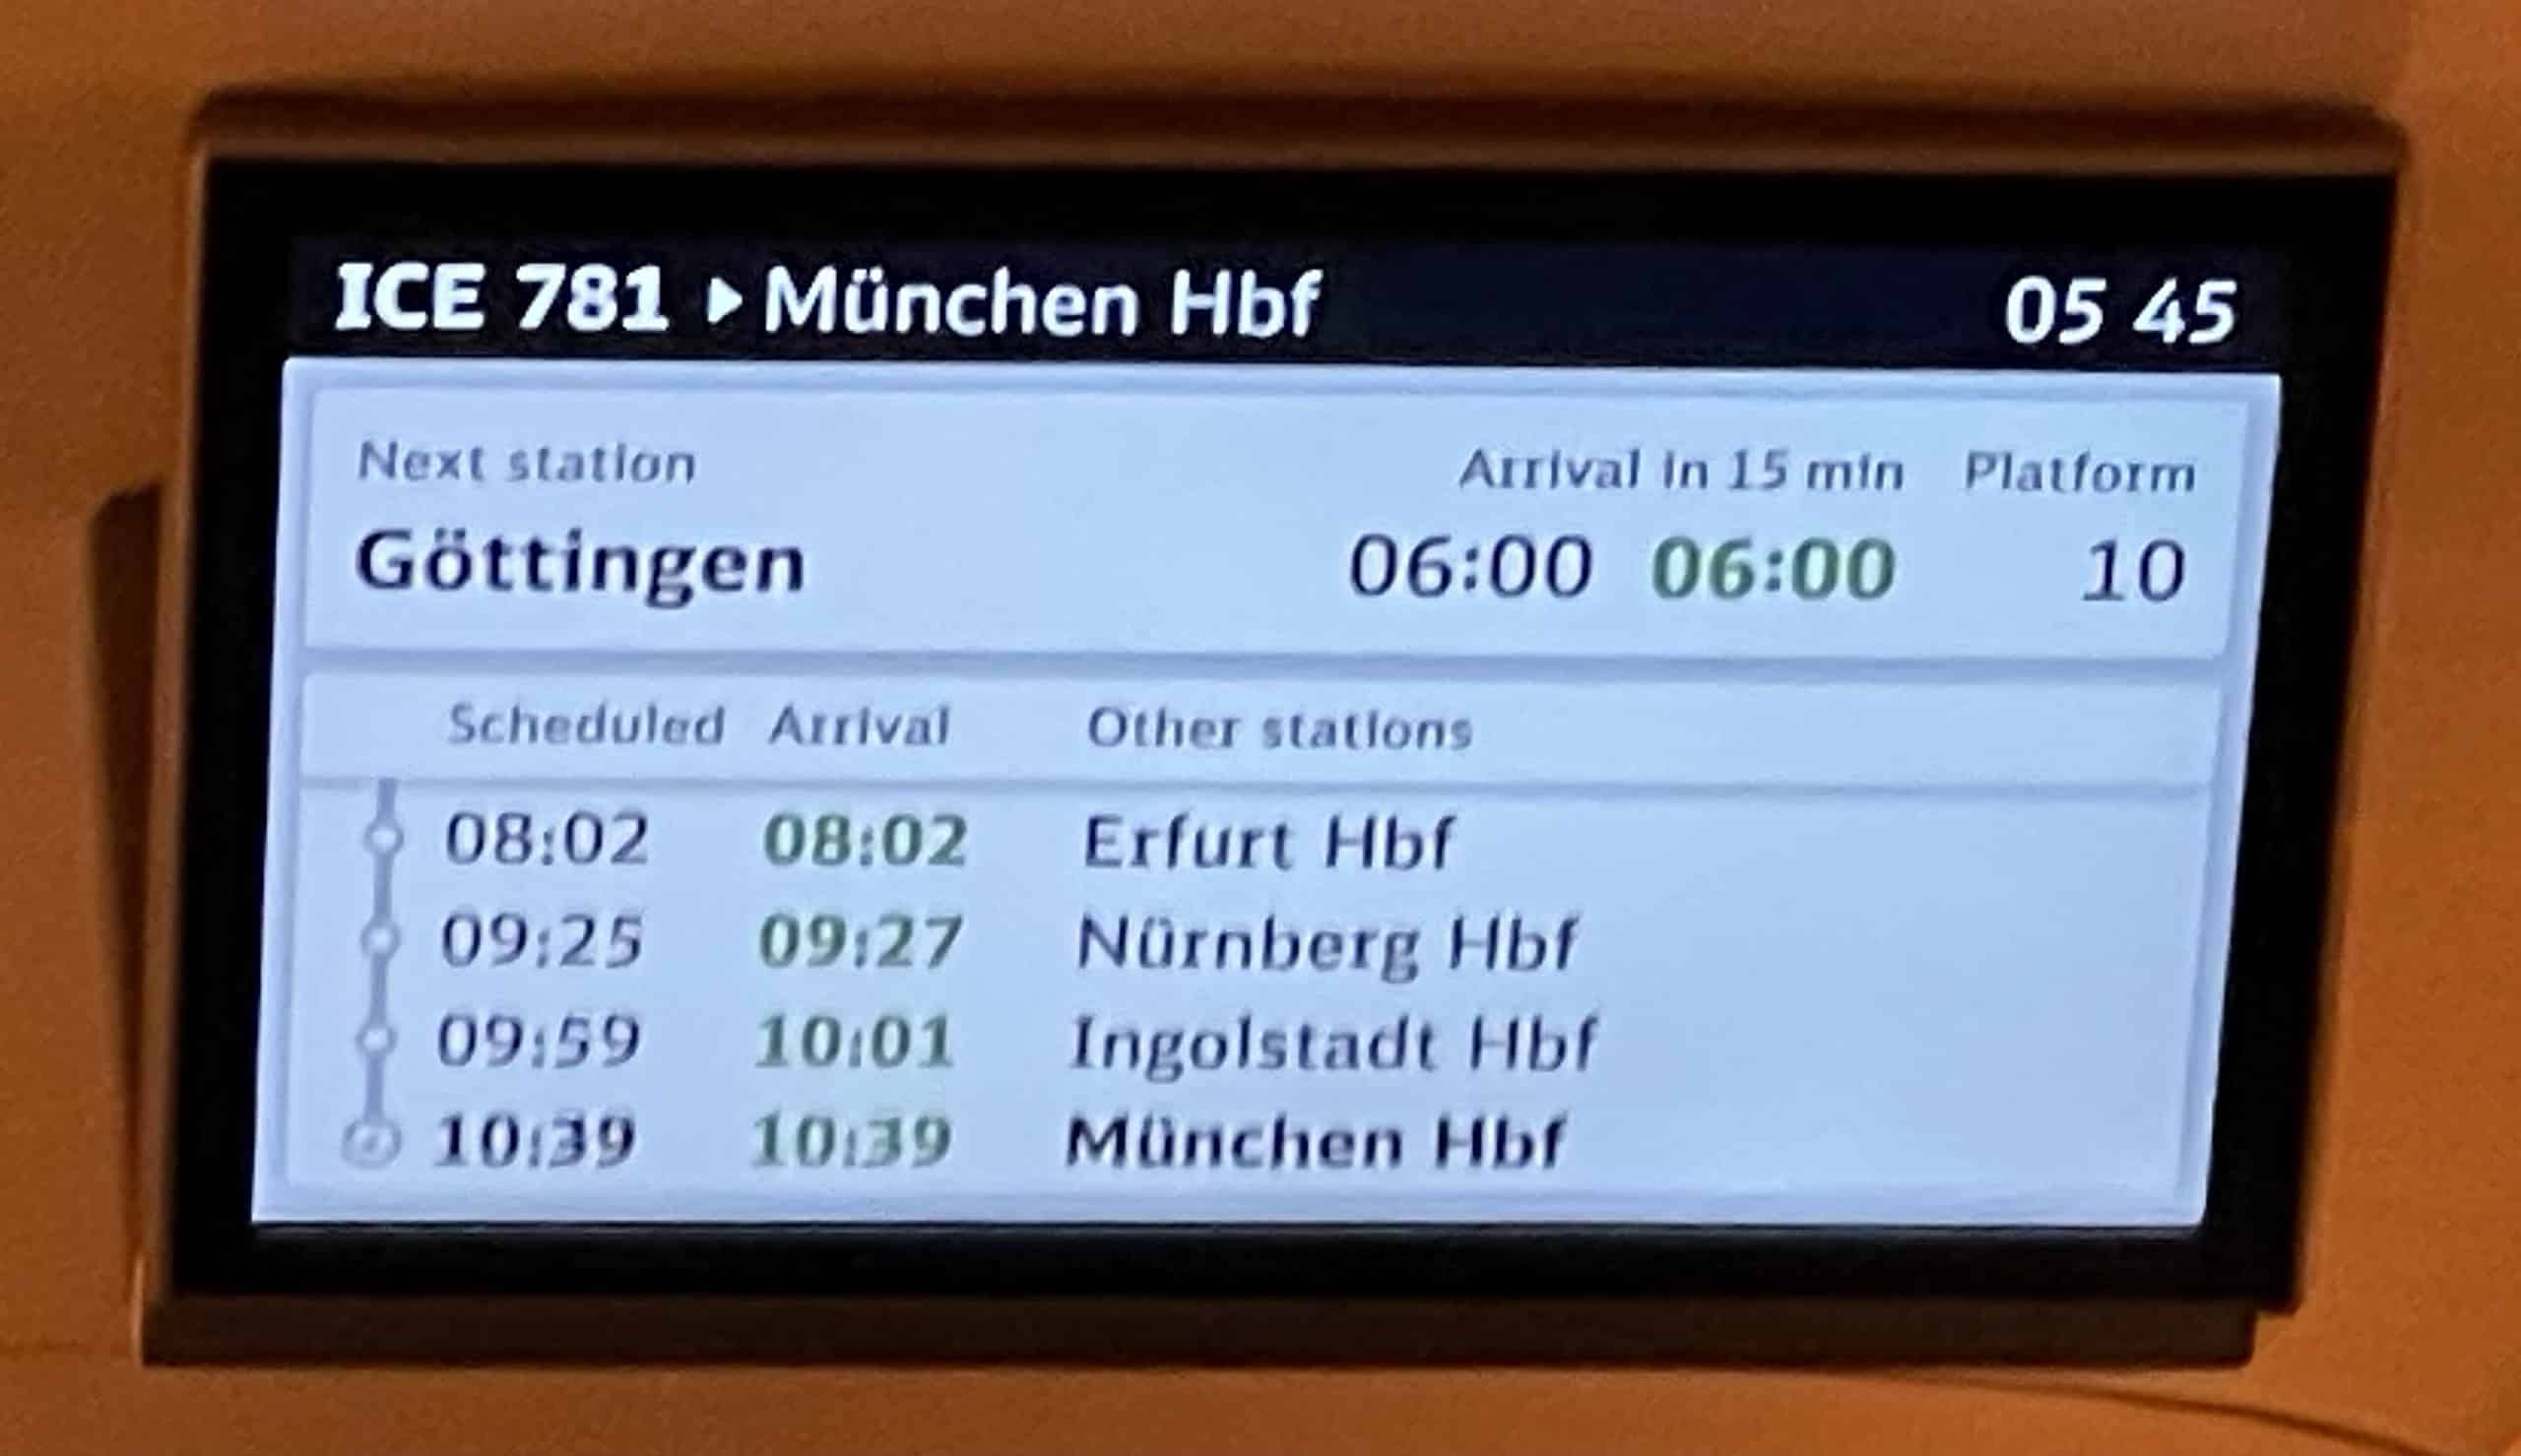 ICE-Bildschirm mit Streckeninfirmationwn nach München.